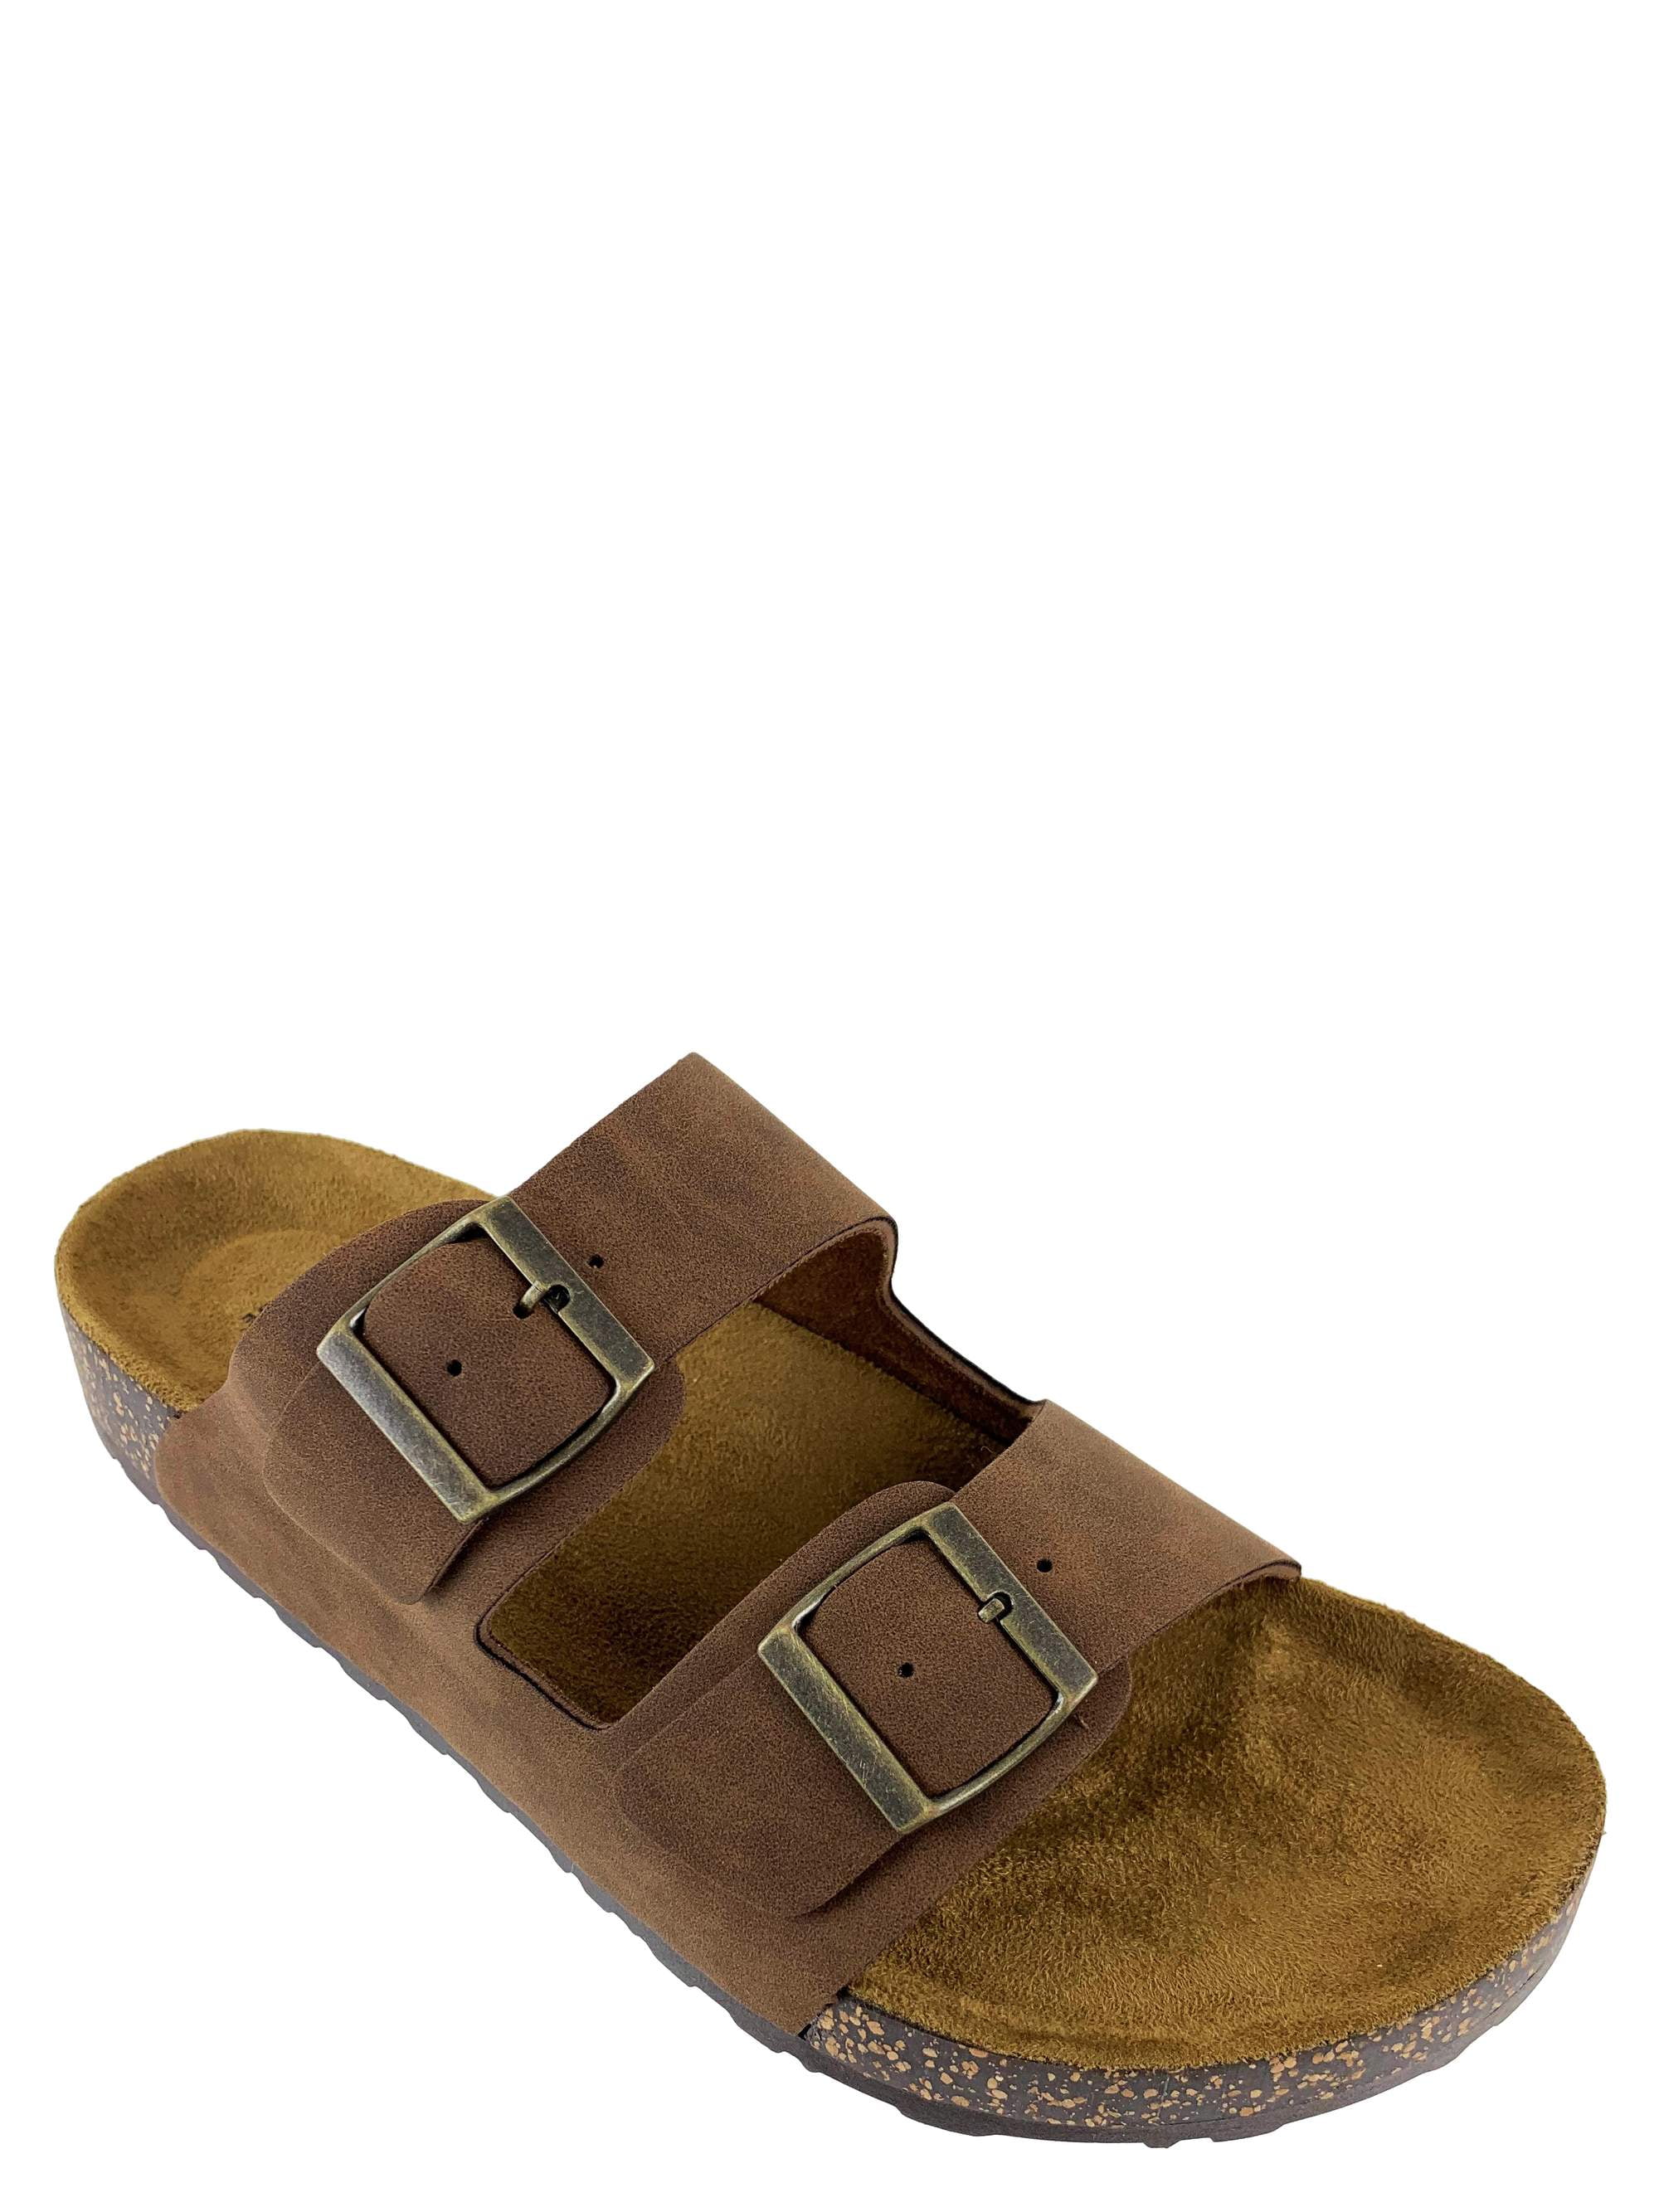 walmart buckle sandals